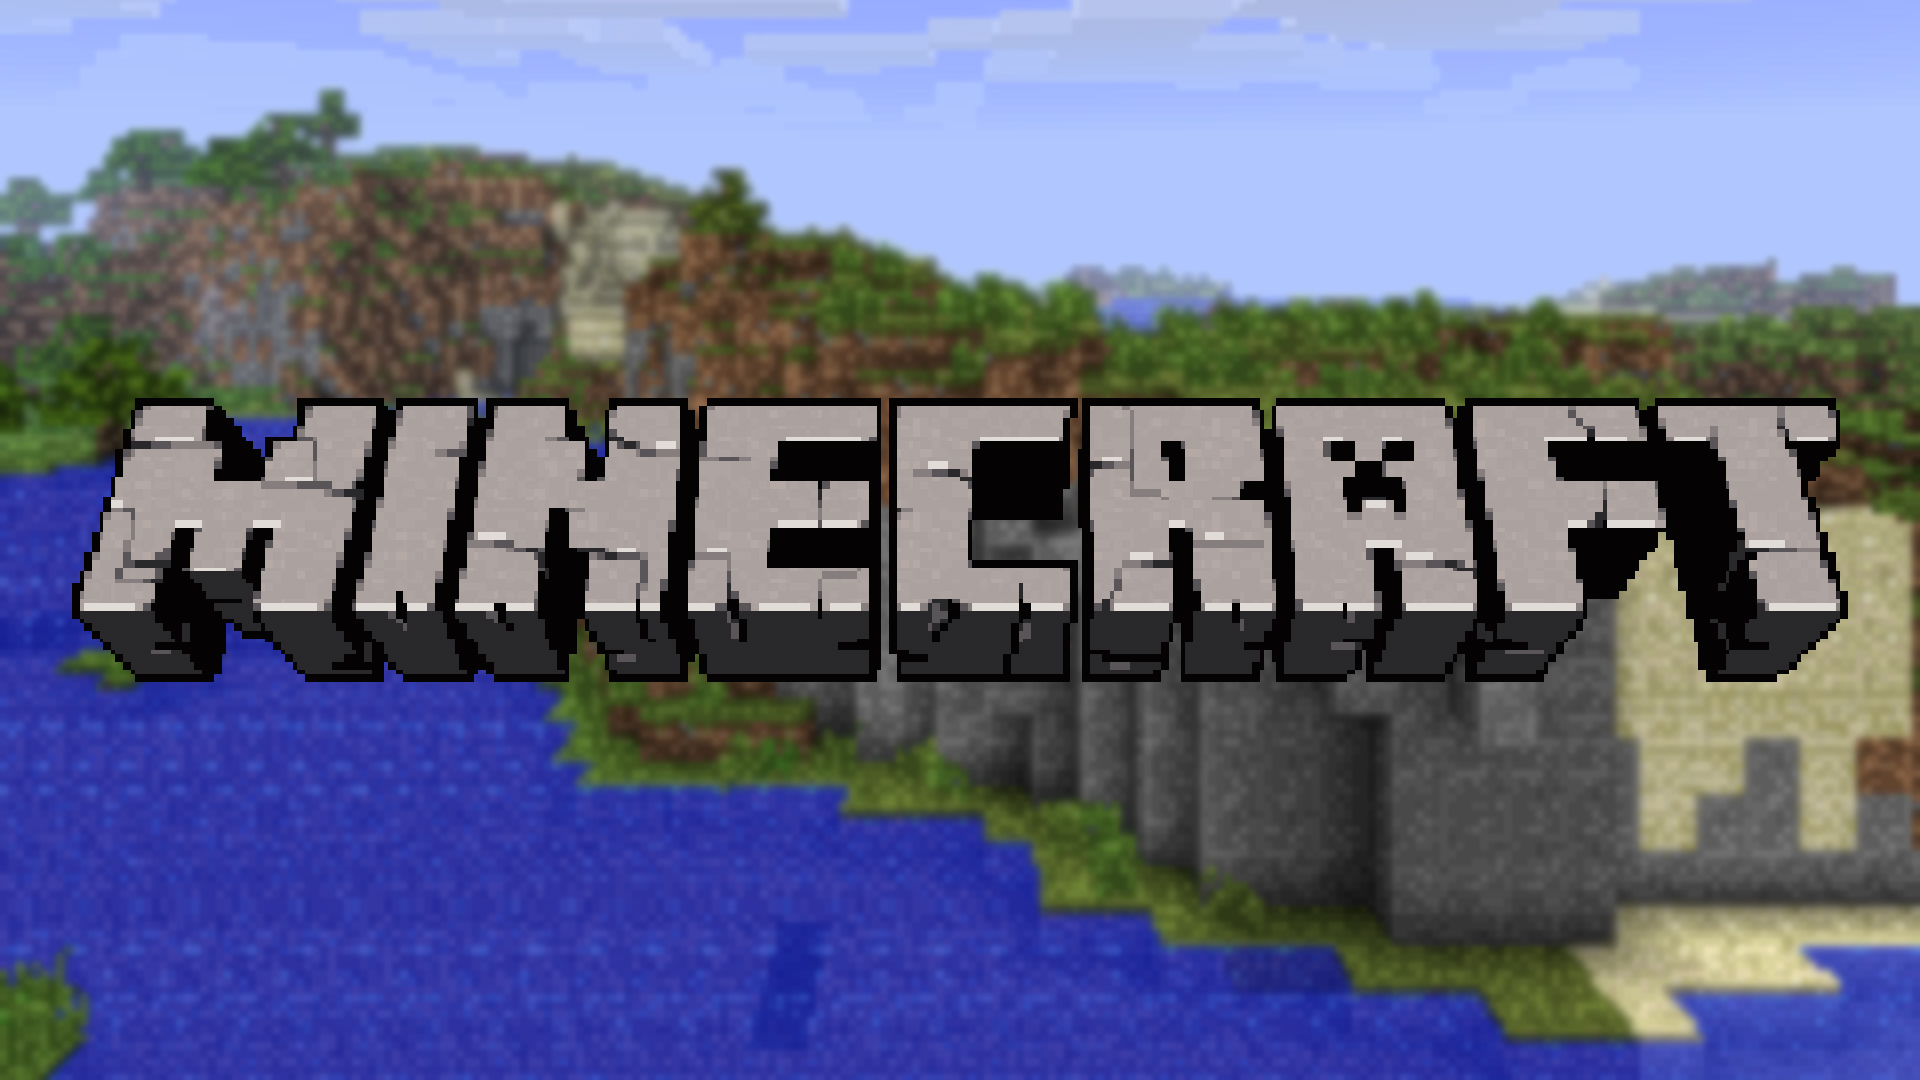 Minecraft Construção: CASA MODERNA #1 (passo-a-passo) NOVA SERIE!? 